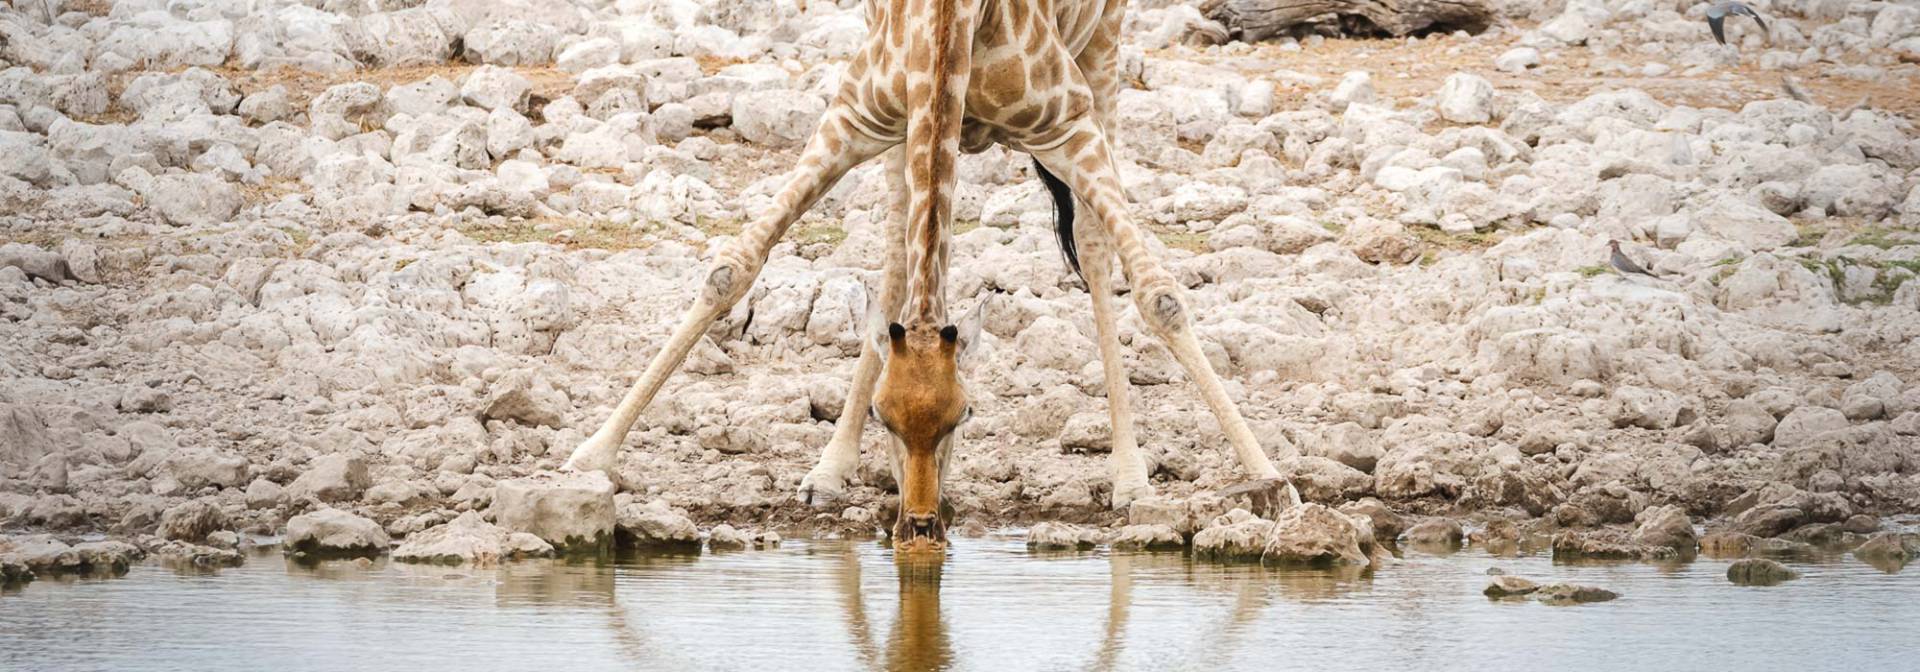 Giraffe am Wasserloch im Etosha National Park